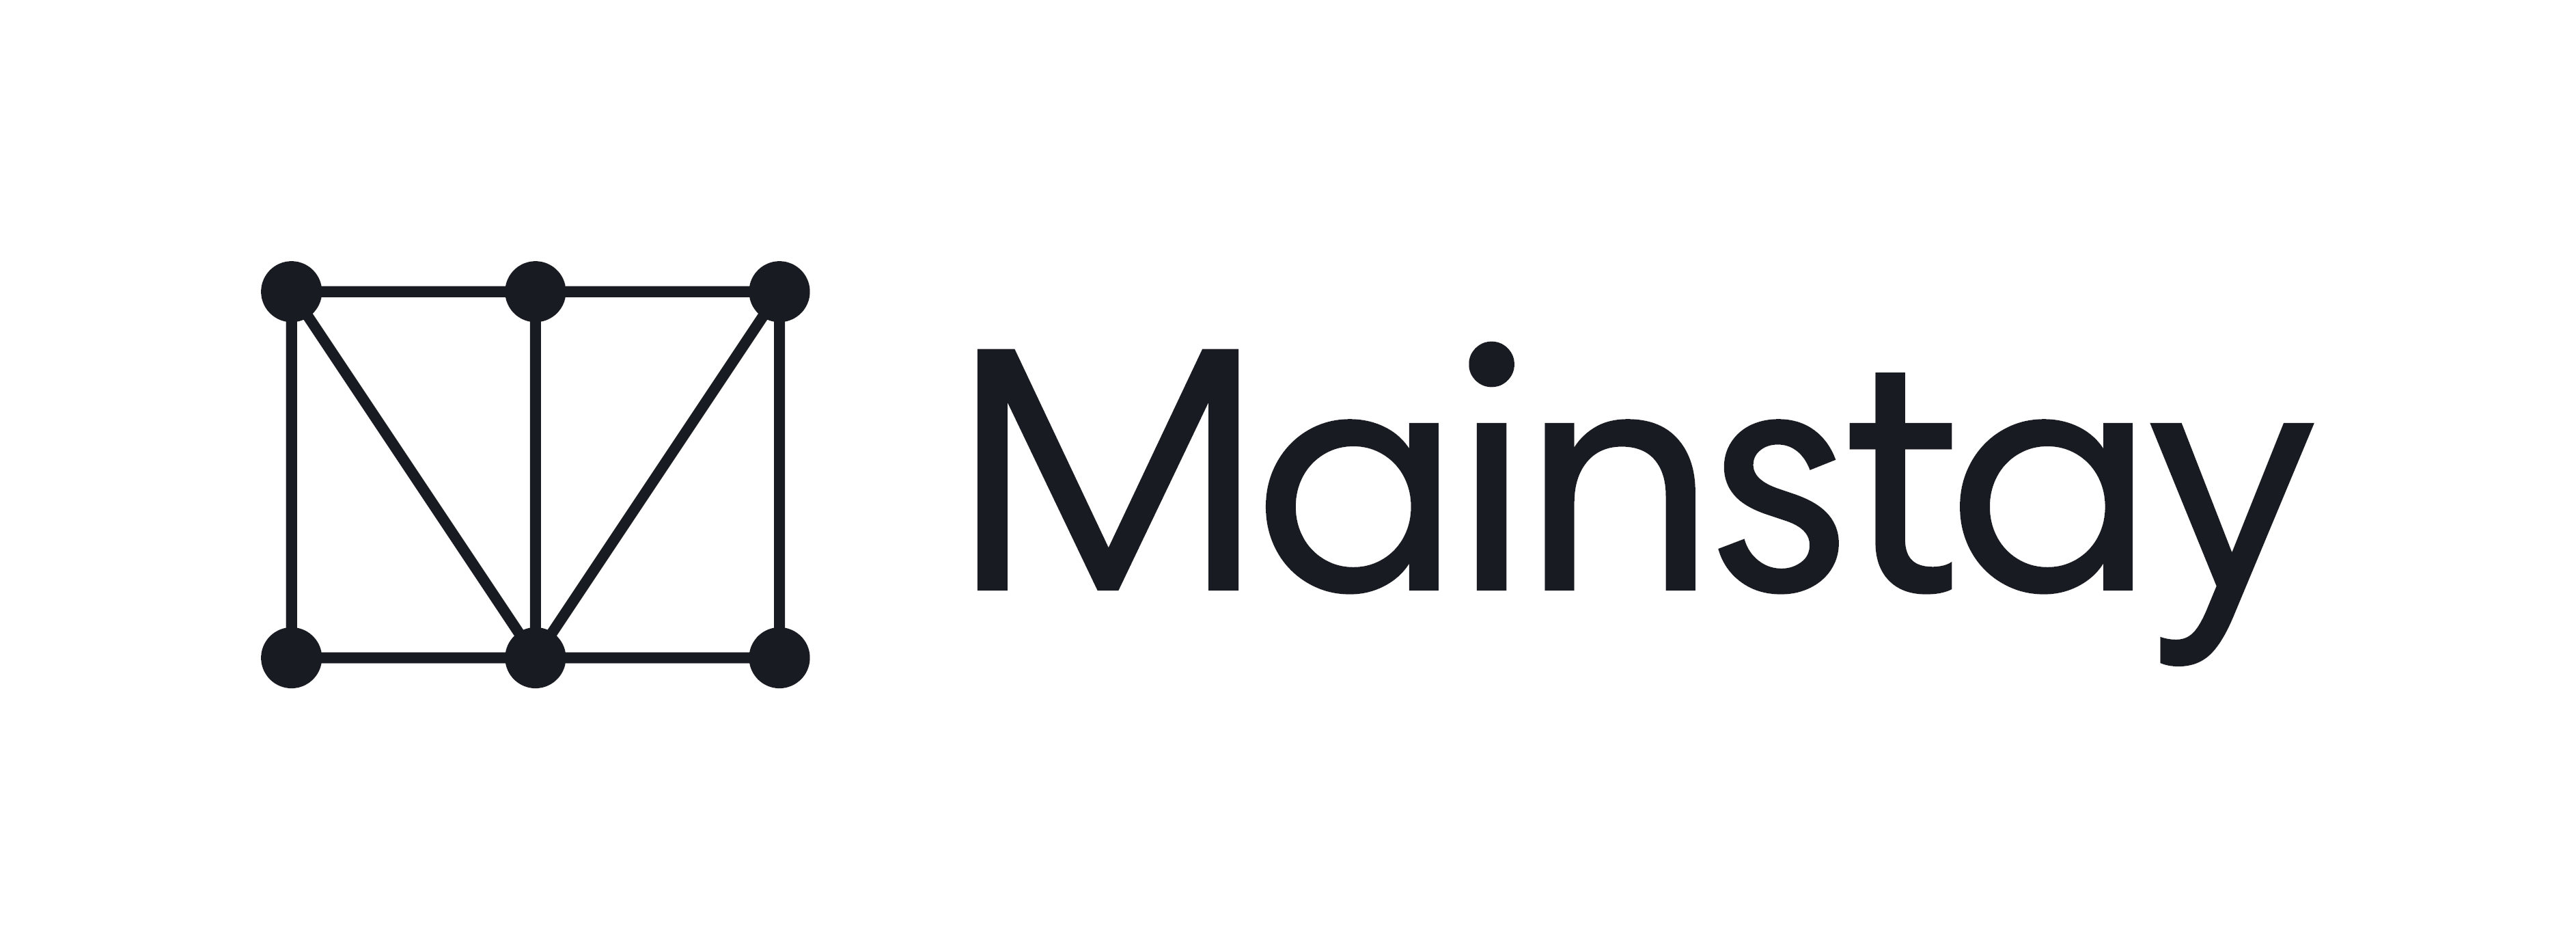 Mainstay_logo (004) (1).png